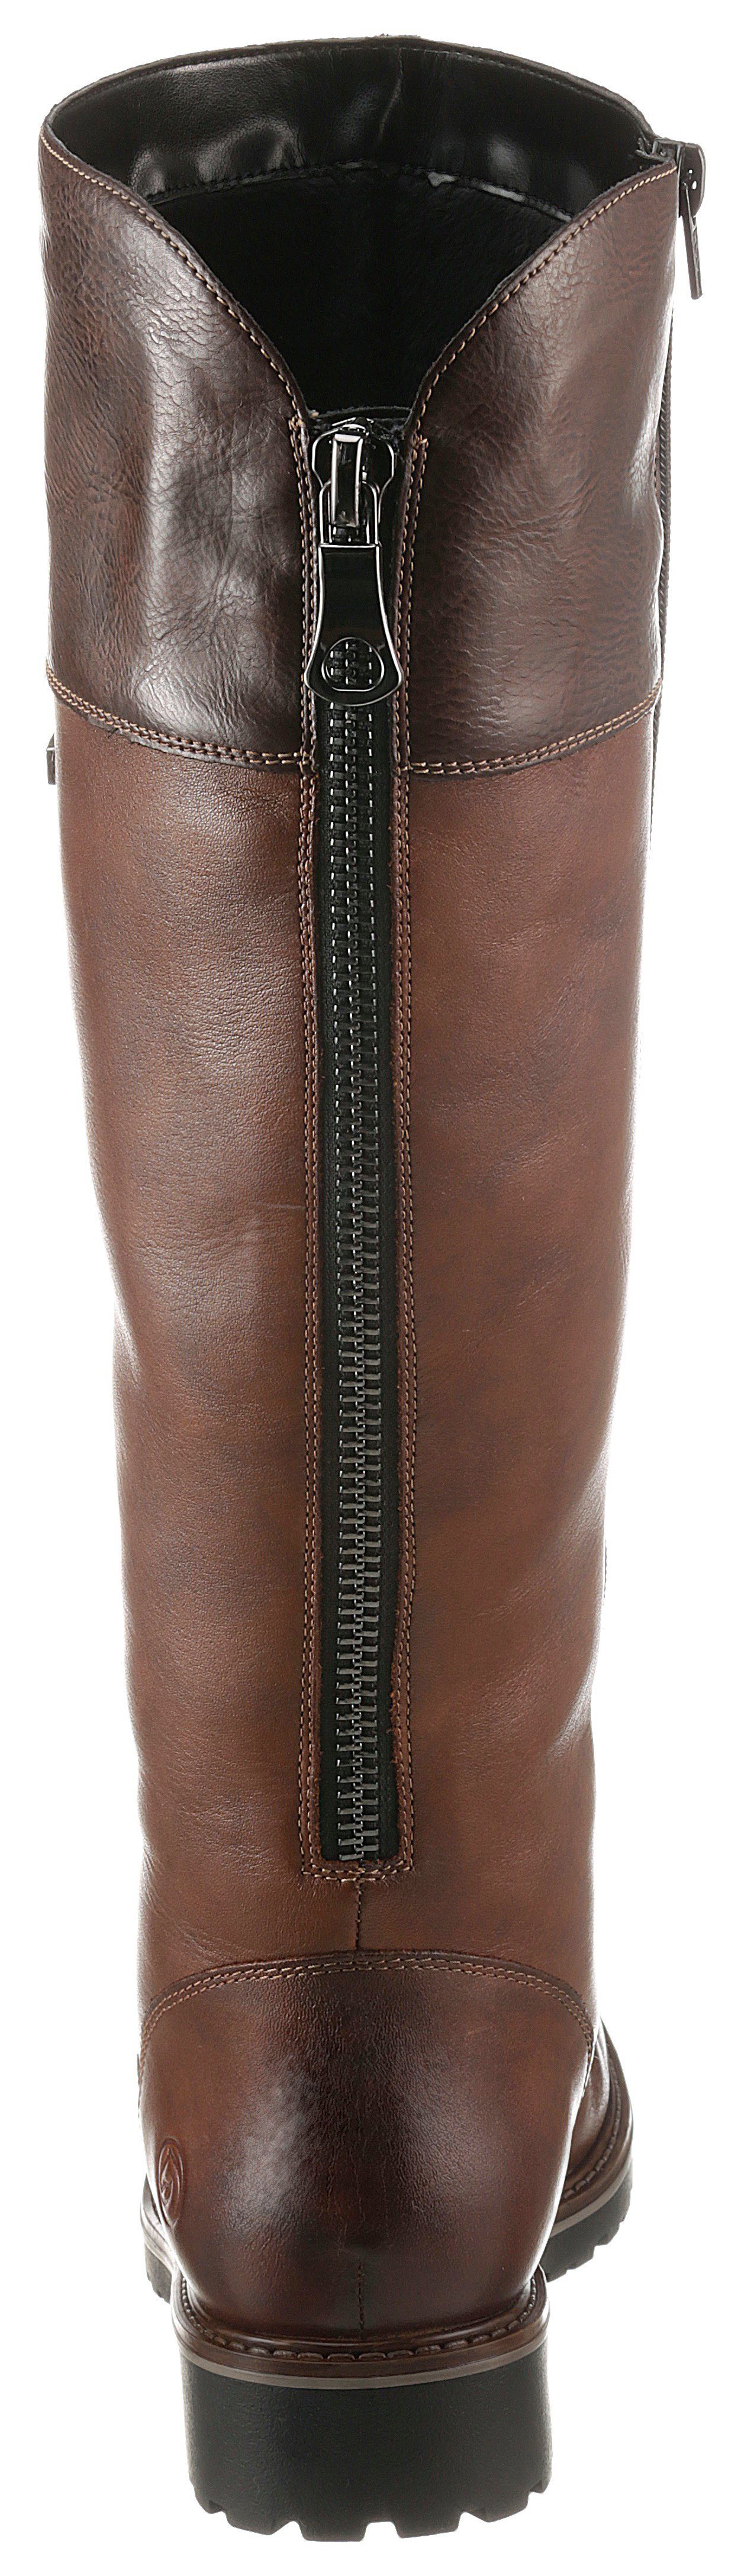 Stiefel mit Remonte braun variabler Schaftweite (22)